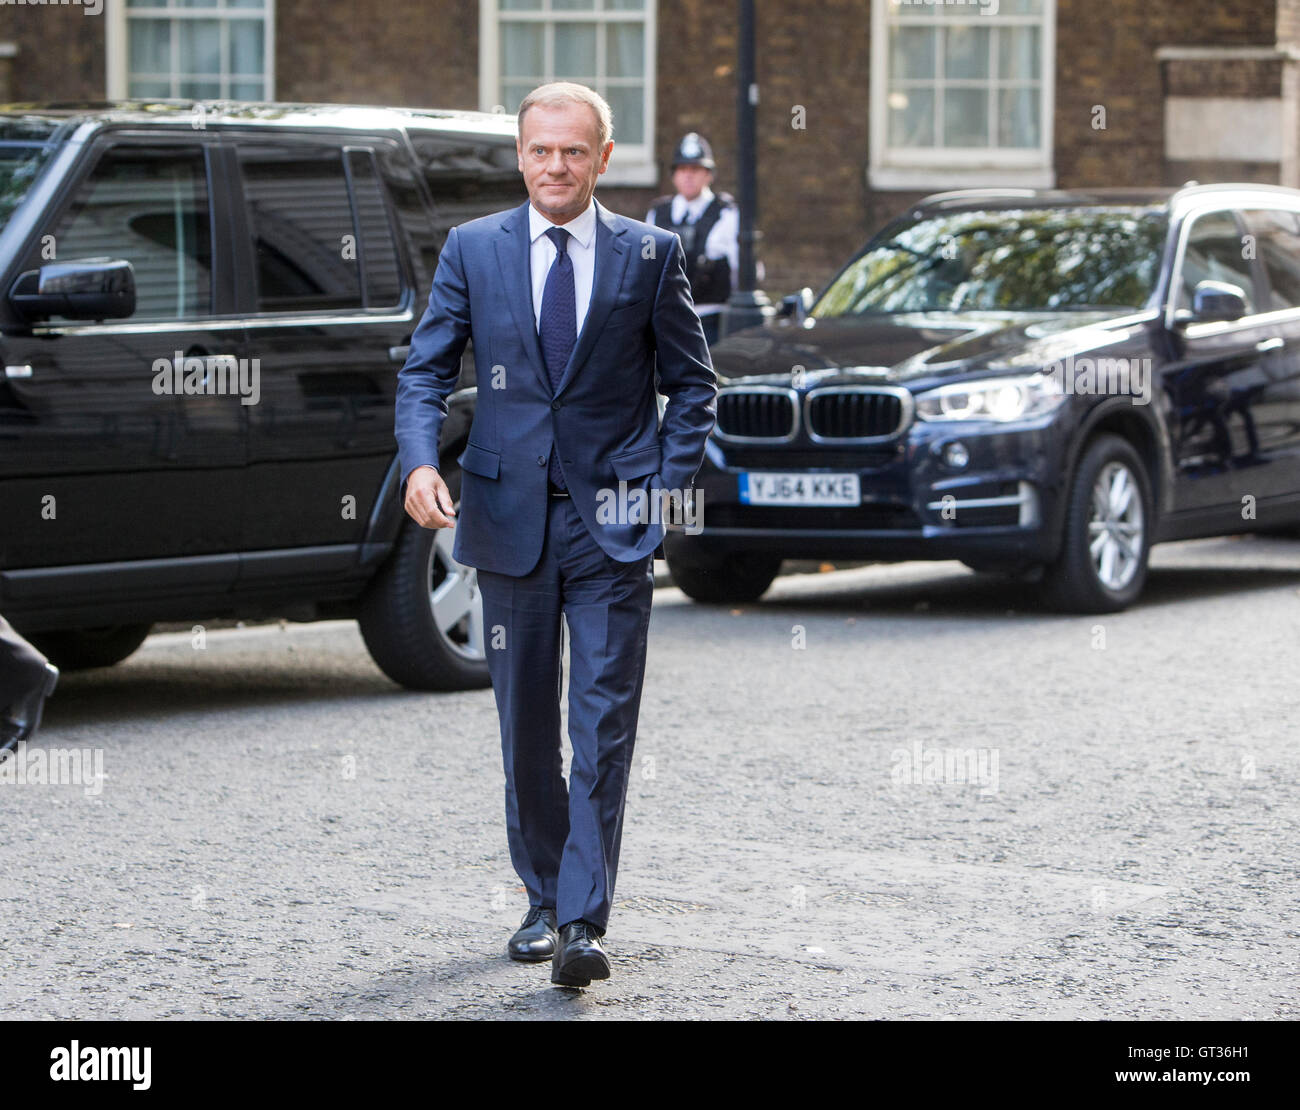 Donald Tusk,Presidente del Consiglio europeo dal 1 dicembre 2014,arriva al 10 di Downing Street per avere colloqui con Theresa Maggio Foto Stock